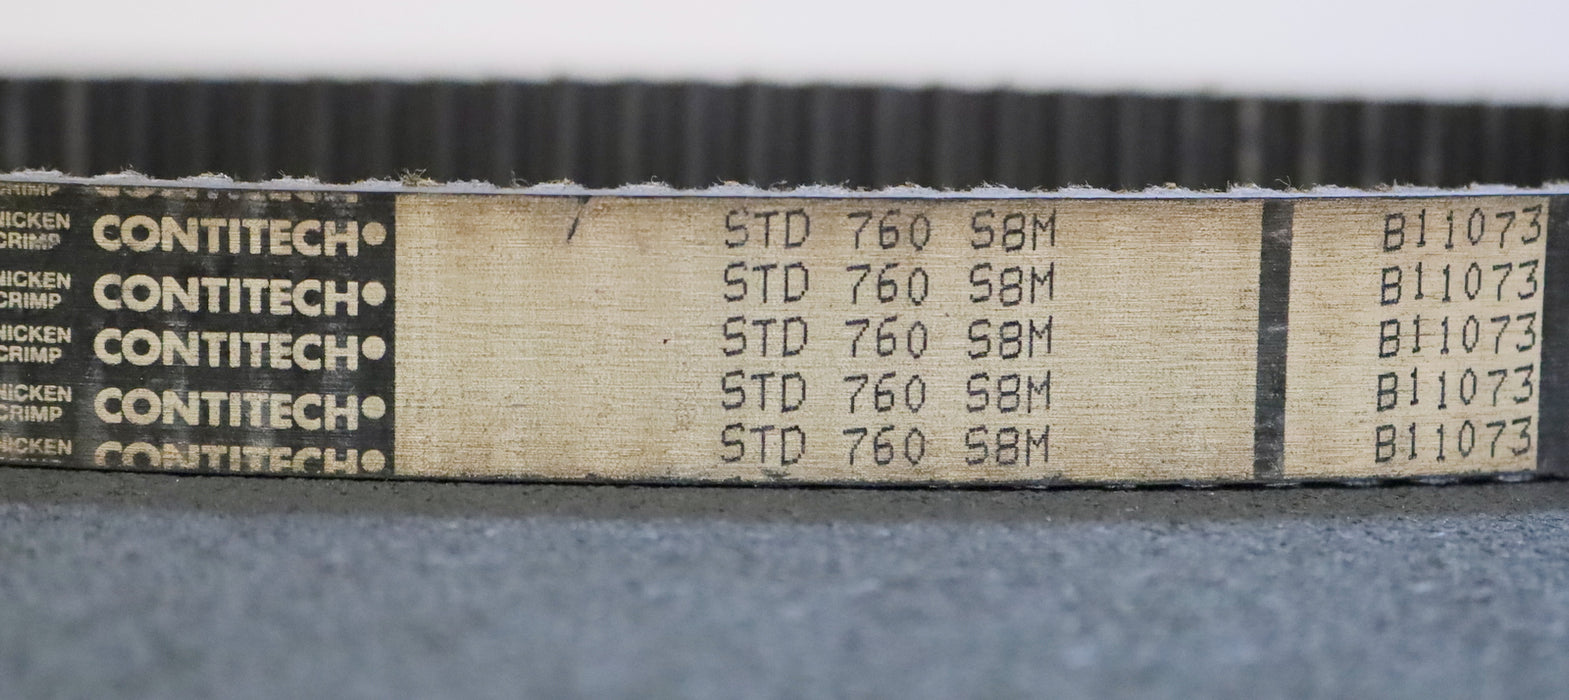 CONTITECH Zahnriemen Timing belt S8M Länge 760mm Breite 26mm - unbenutzt